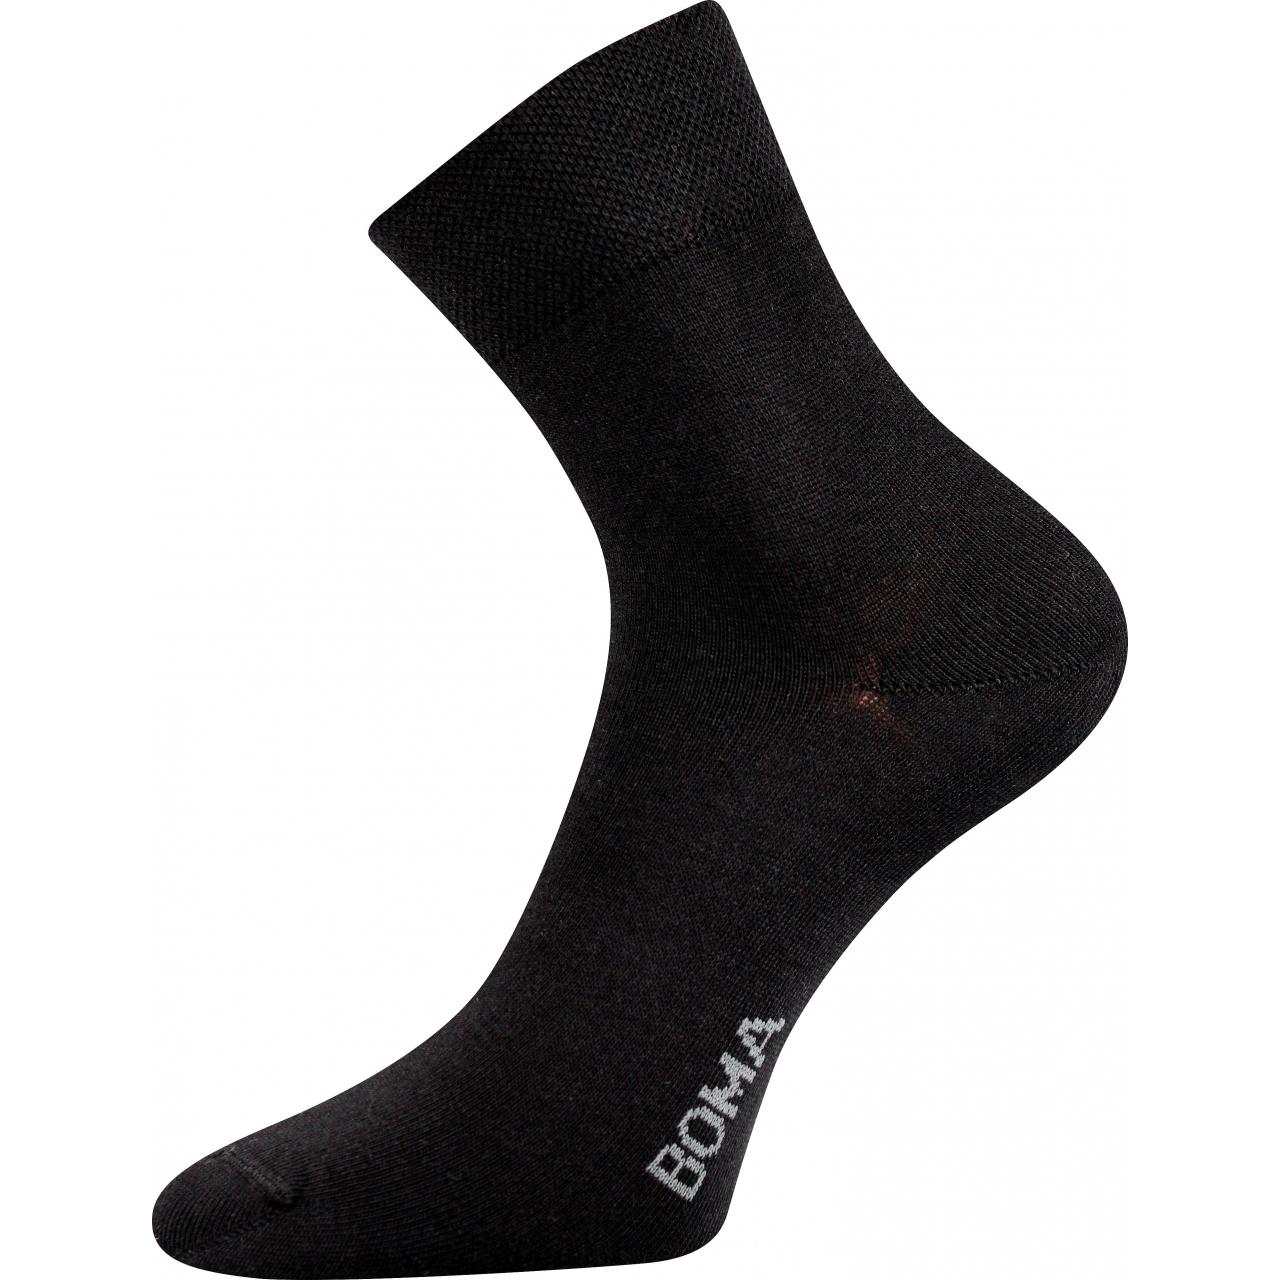 Ponožky unisex klasické Boma Zazr - černé, 43-46